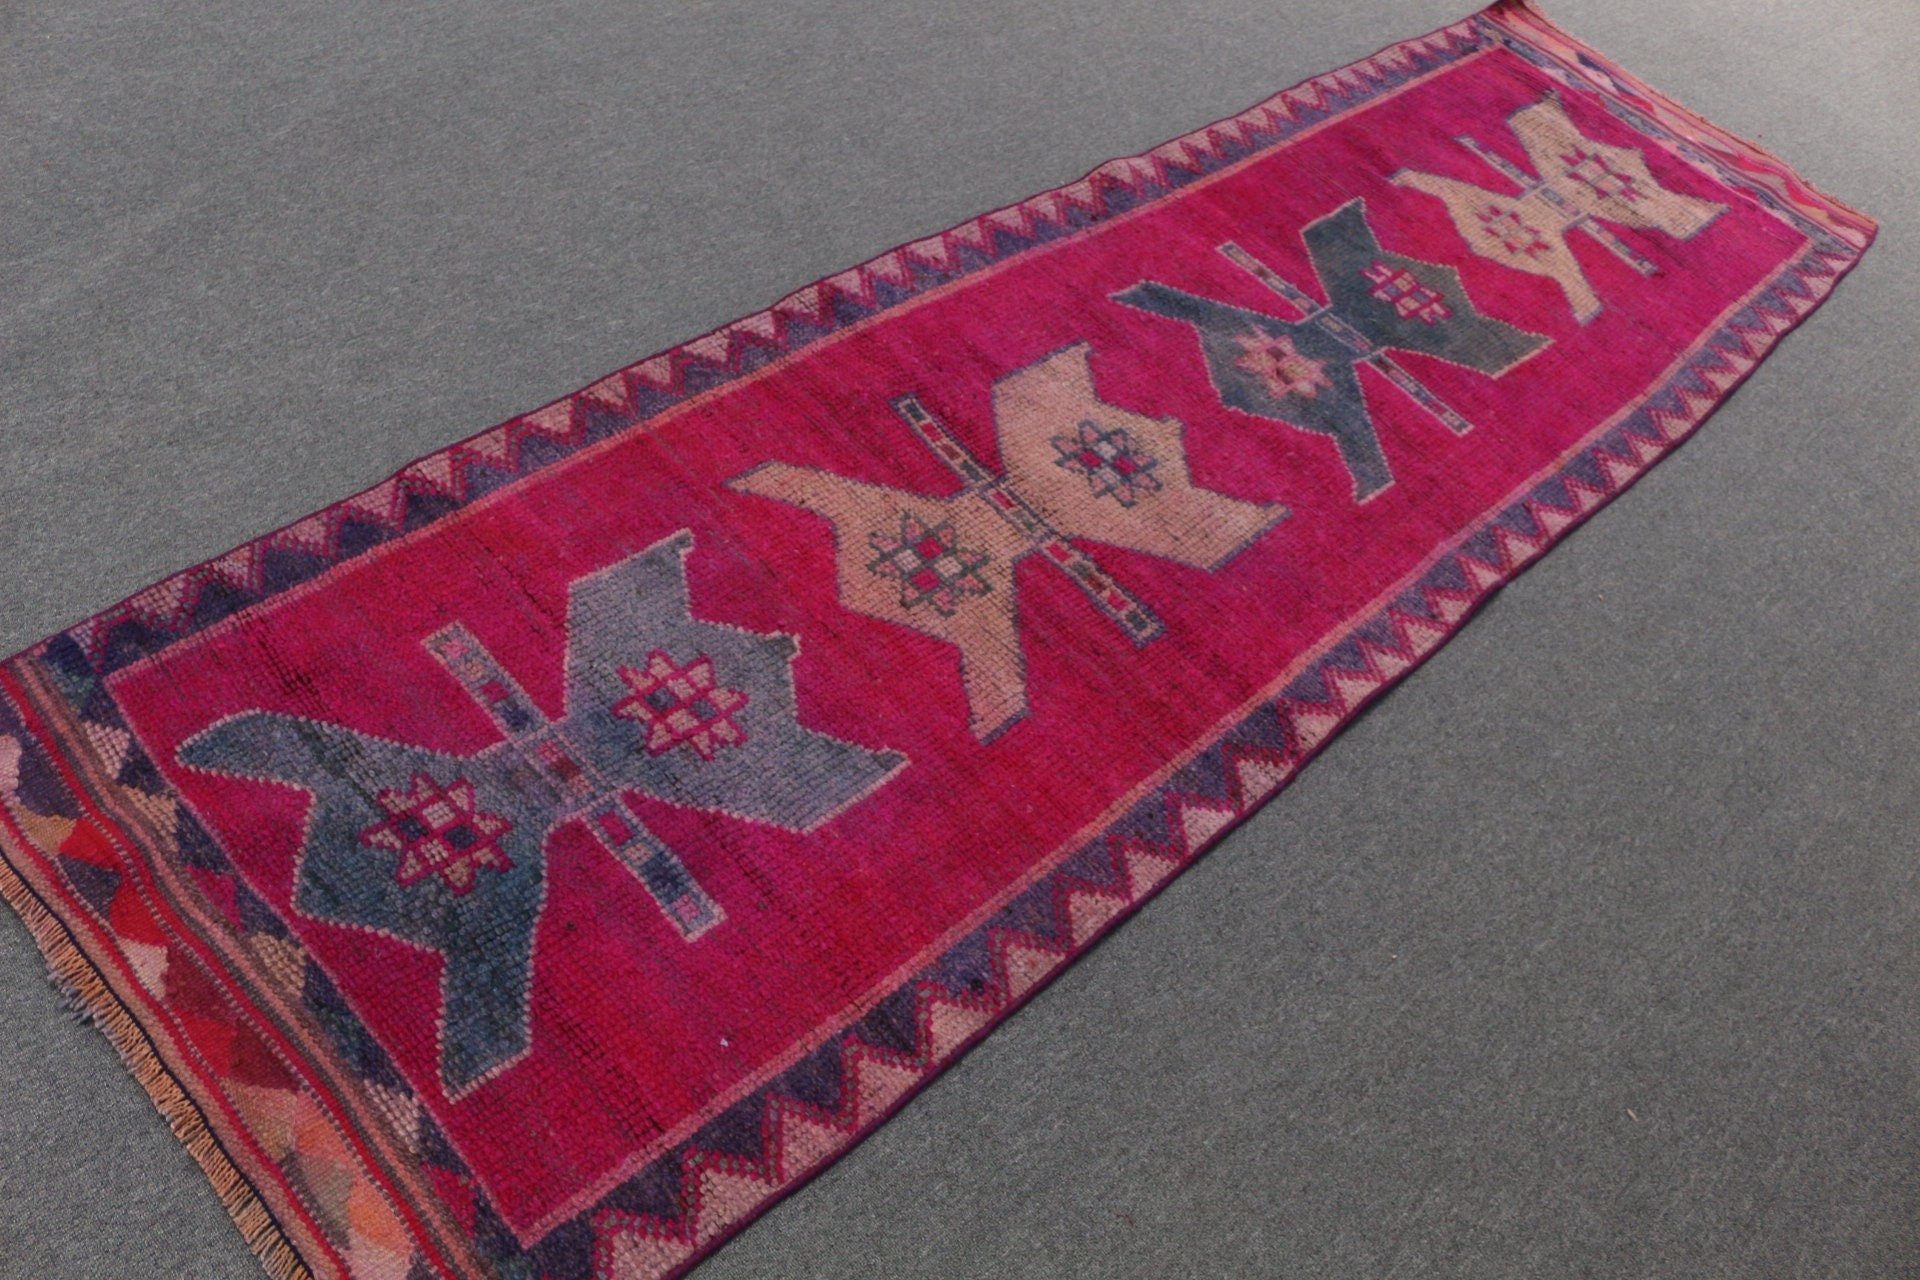 Vintage Rug, Pink Oriental Rug, Oushak Rugs, Turkish Rugs, Stair Rug, Rugs for Stair, Hallway Rug, 2.9x10 ft Runner Rug